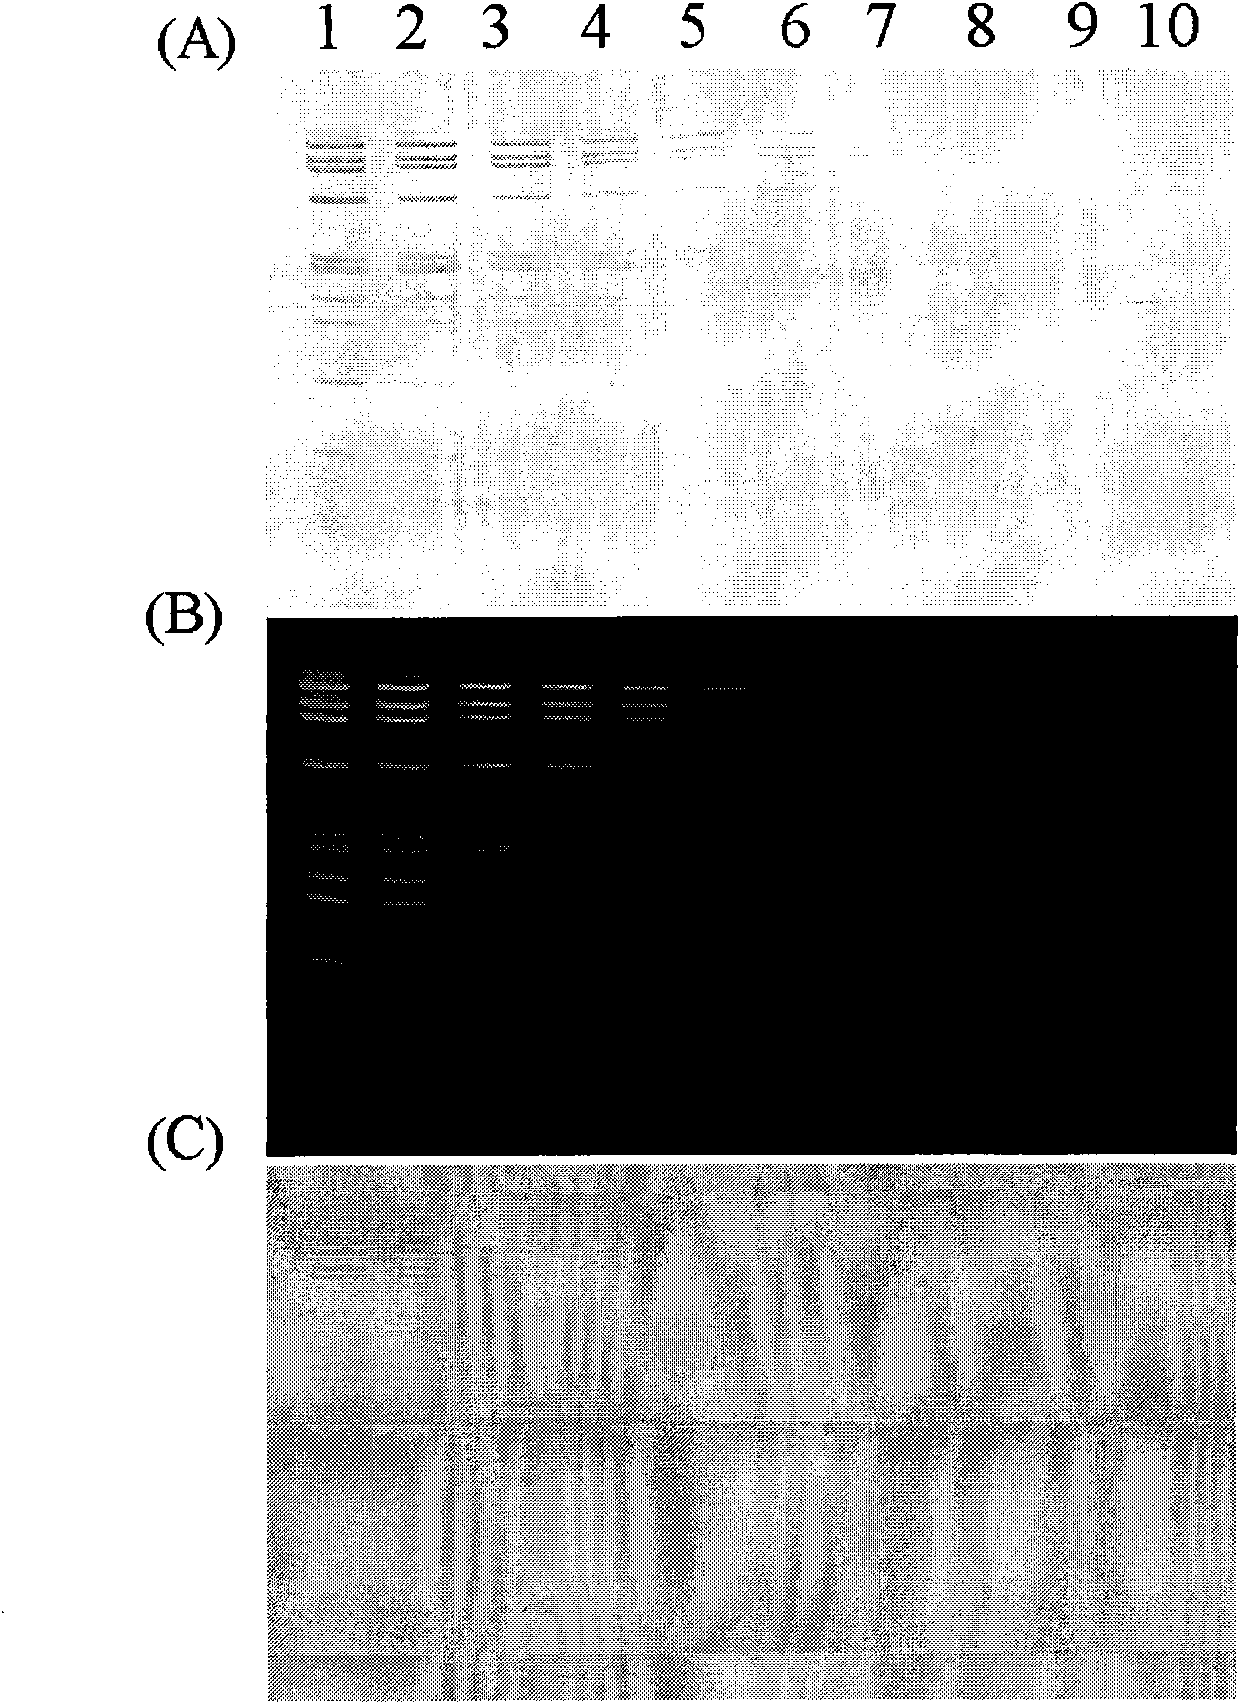 Application of ethyl violet in DNA detection